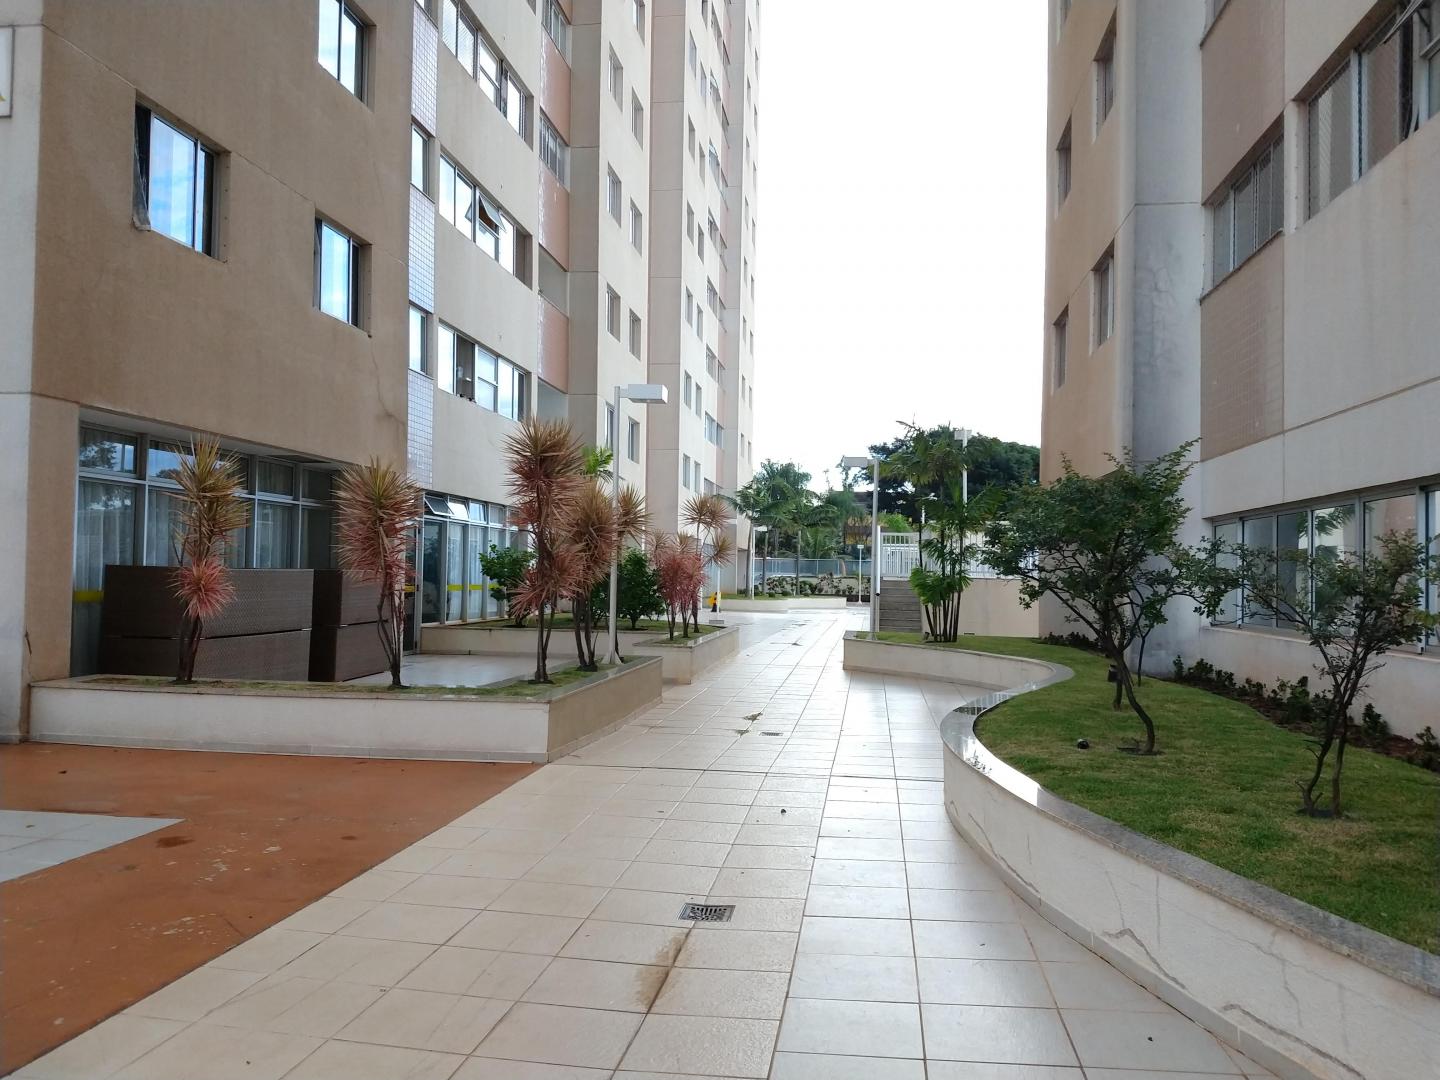 Apartamento 03 quartos, Guará, Brasília/ DF.